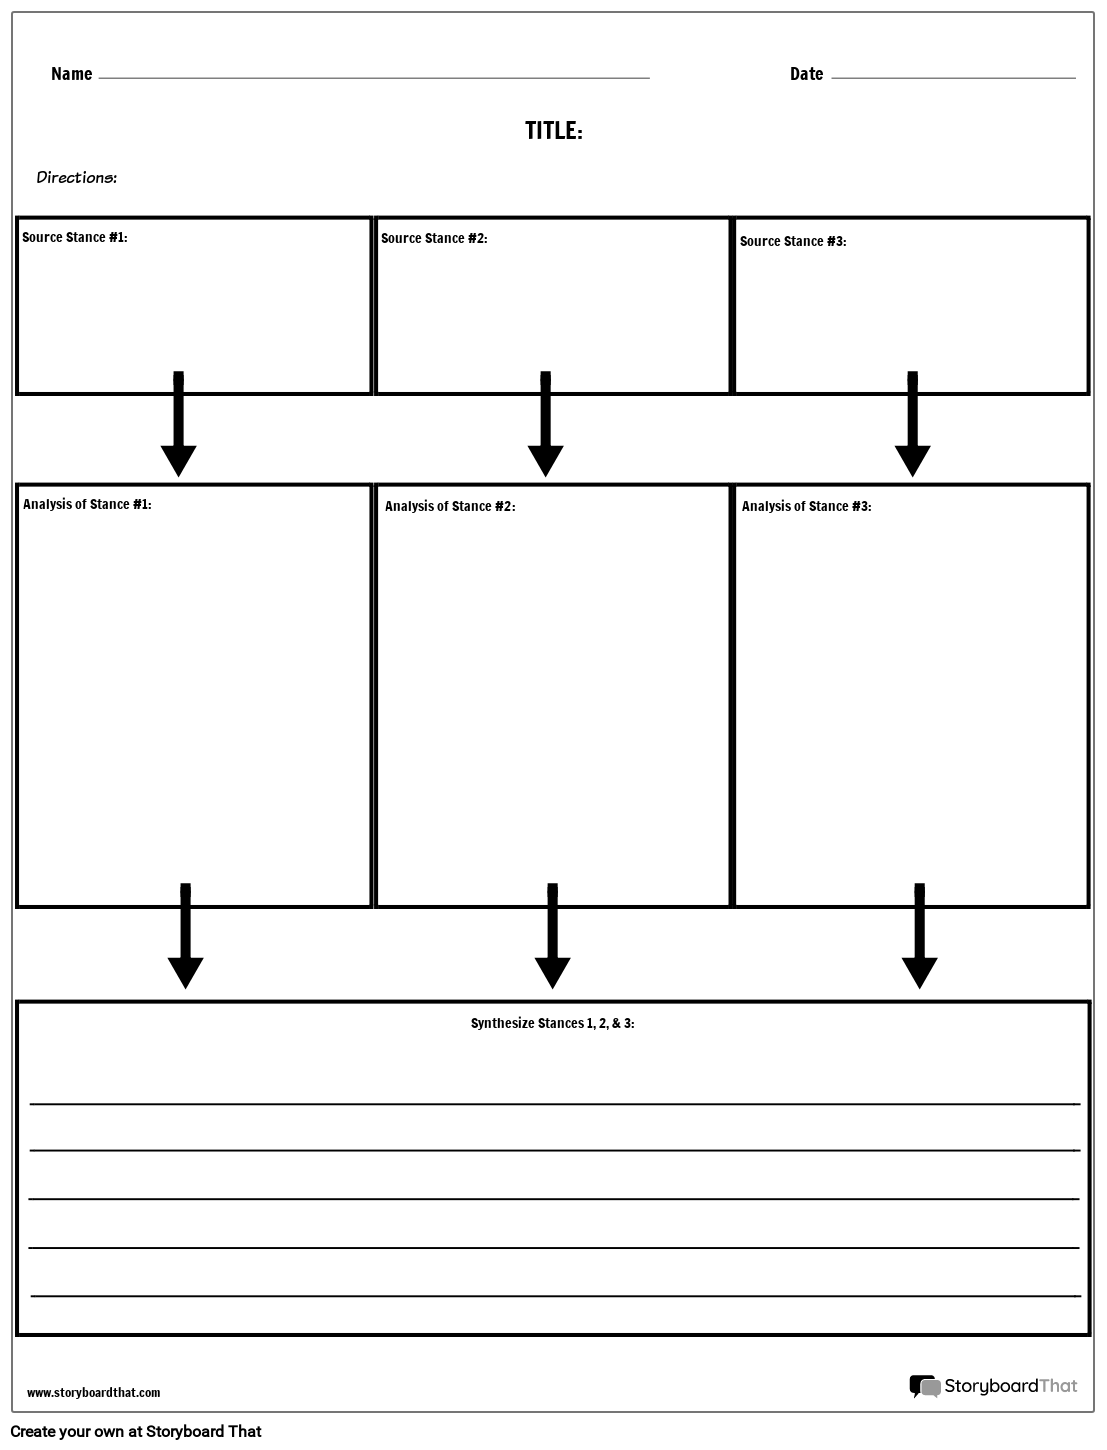 summarizing-worksheets-synthesizing-information-storyboardthat